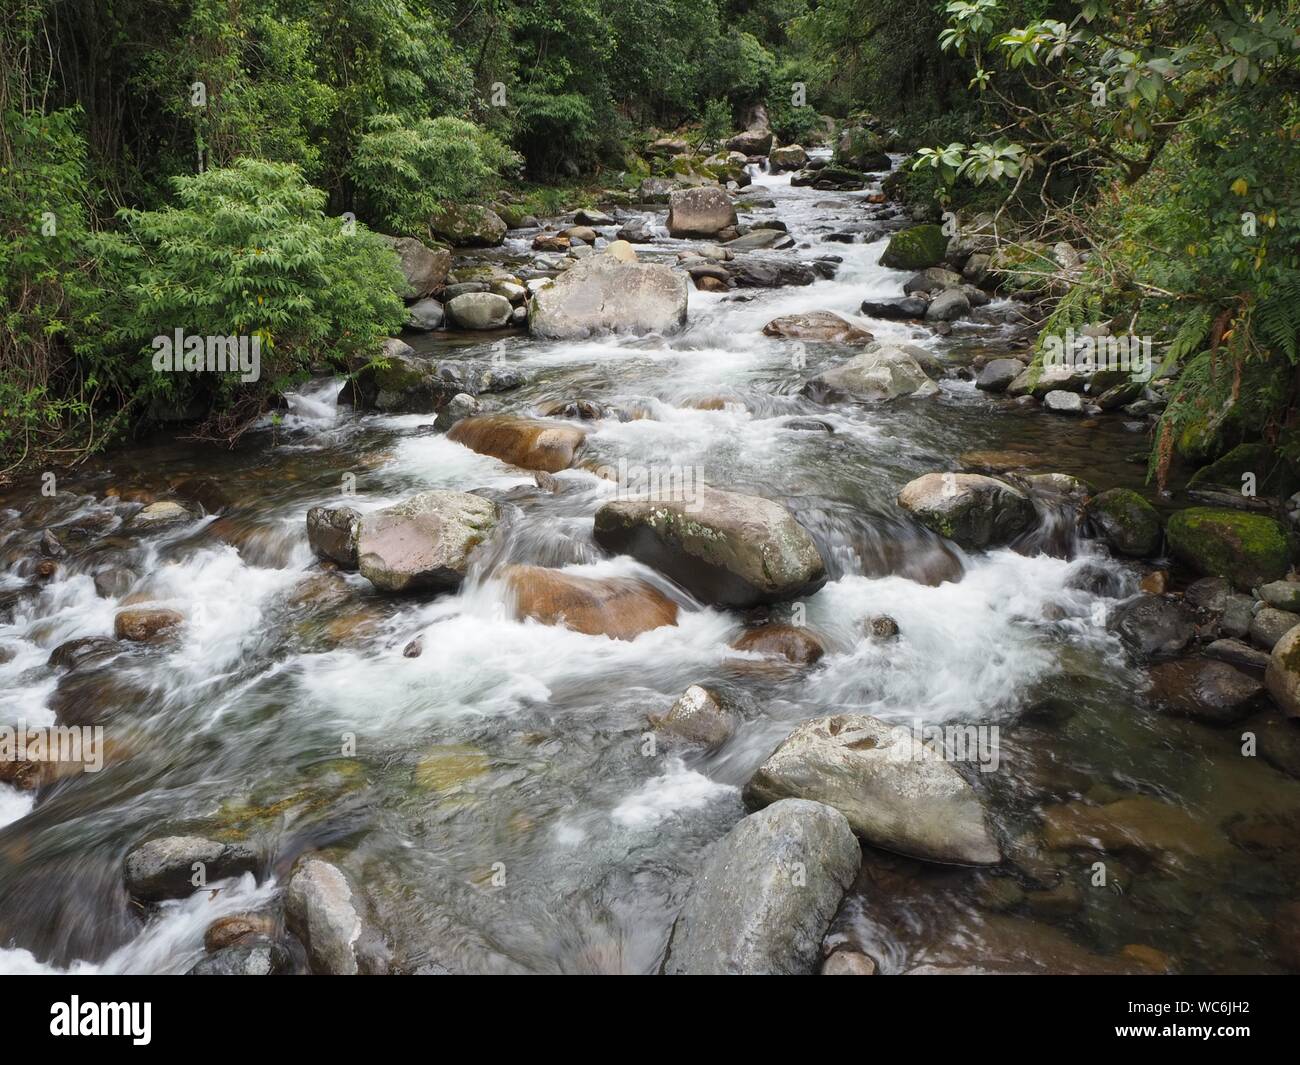 Foresta pluviale tropicale e fiume giungla o ruscello che scorre veloce con acqua bianca nella foresta vicino Boquete a Panama. Vicino alle cascate Wendys. Foto Stock